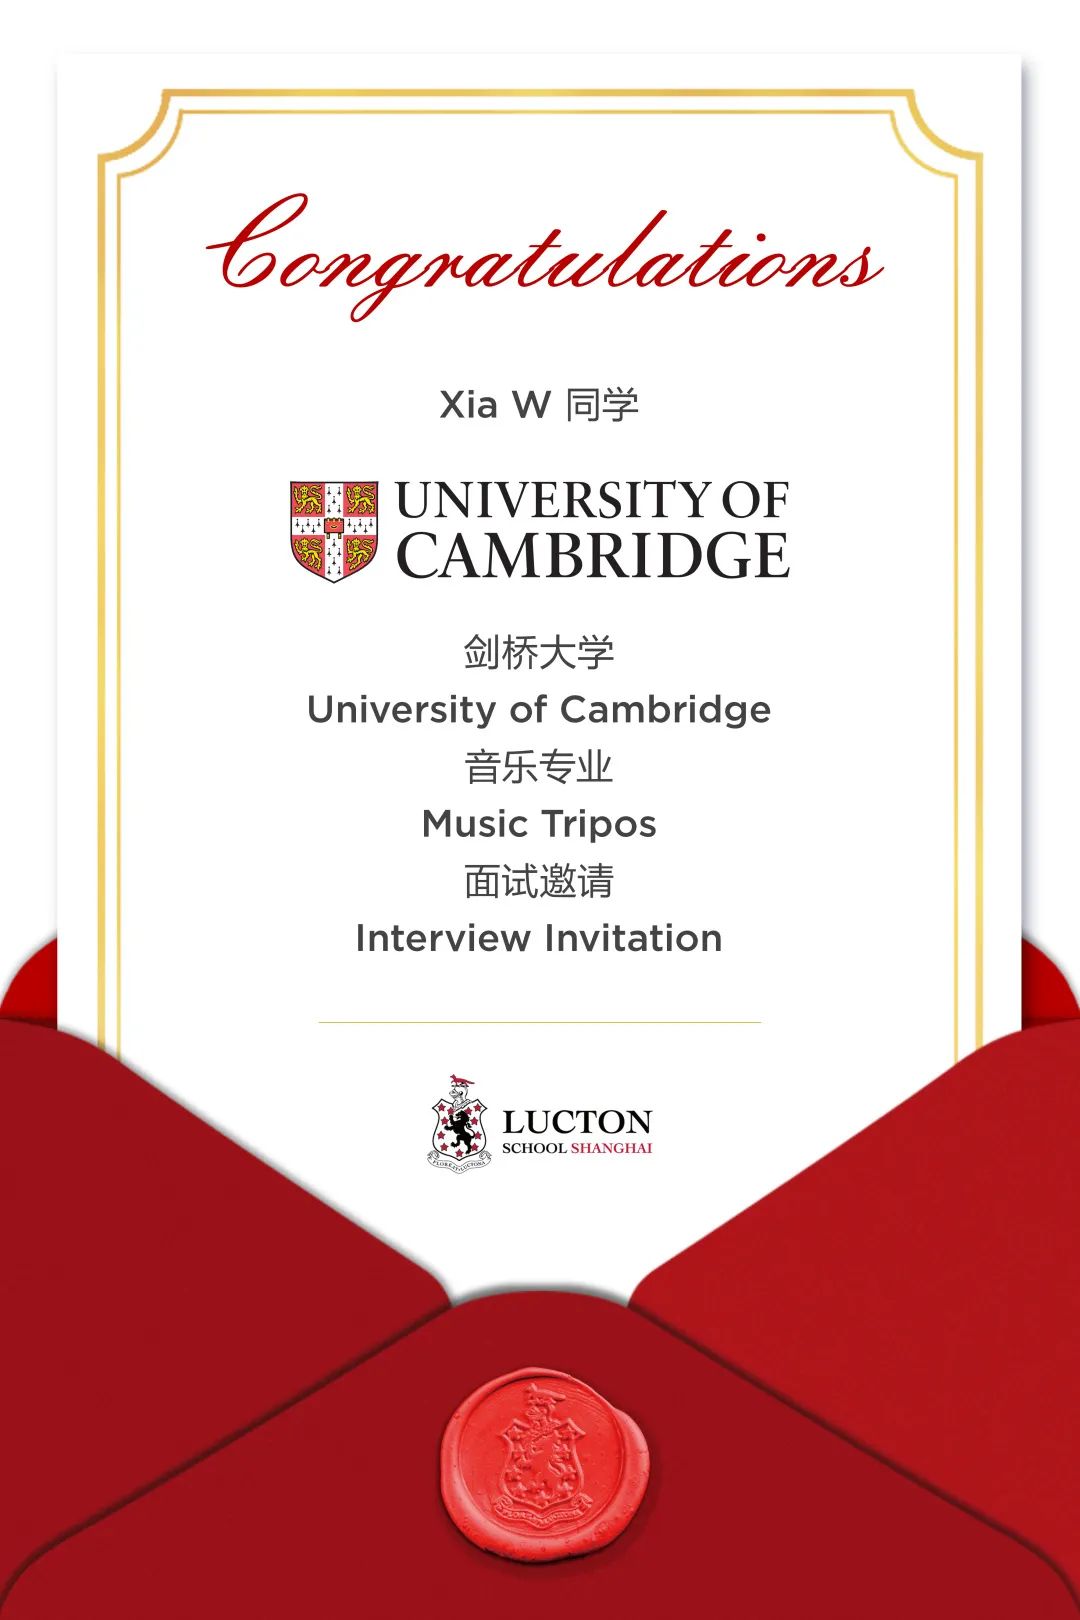 上海莱克顿录取捷报 | University Offer